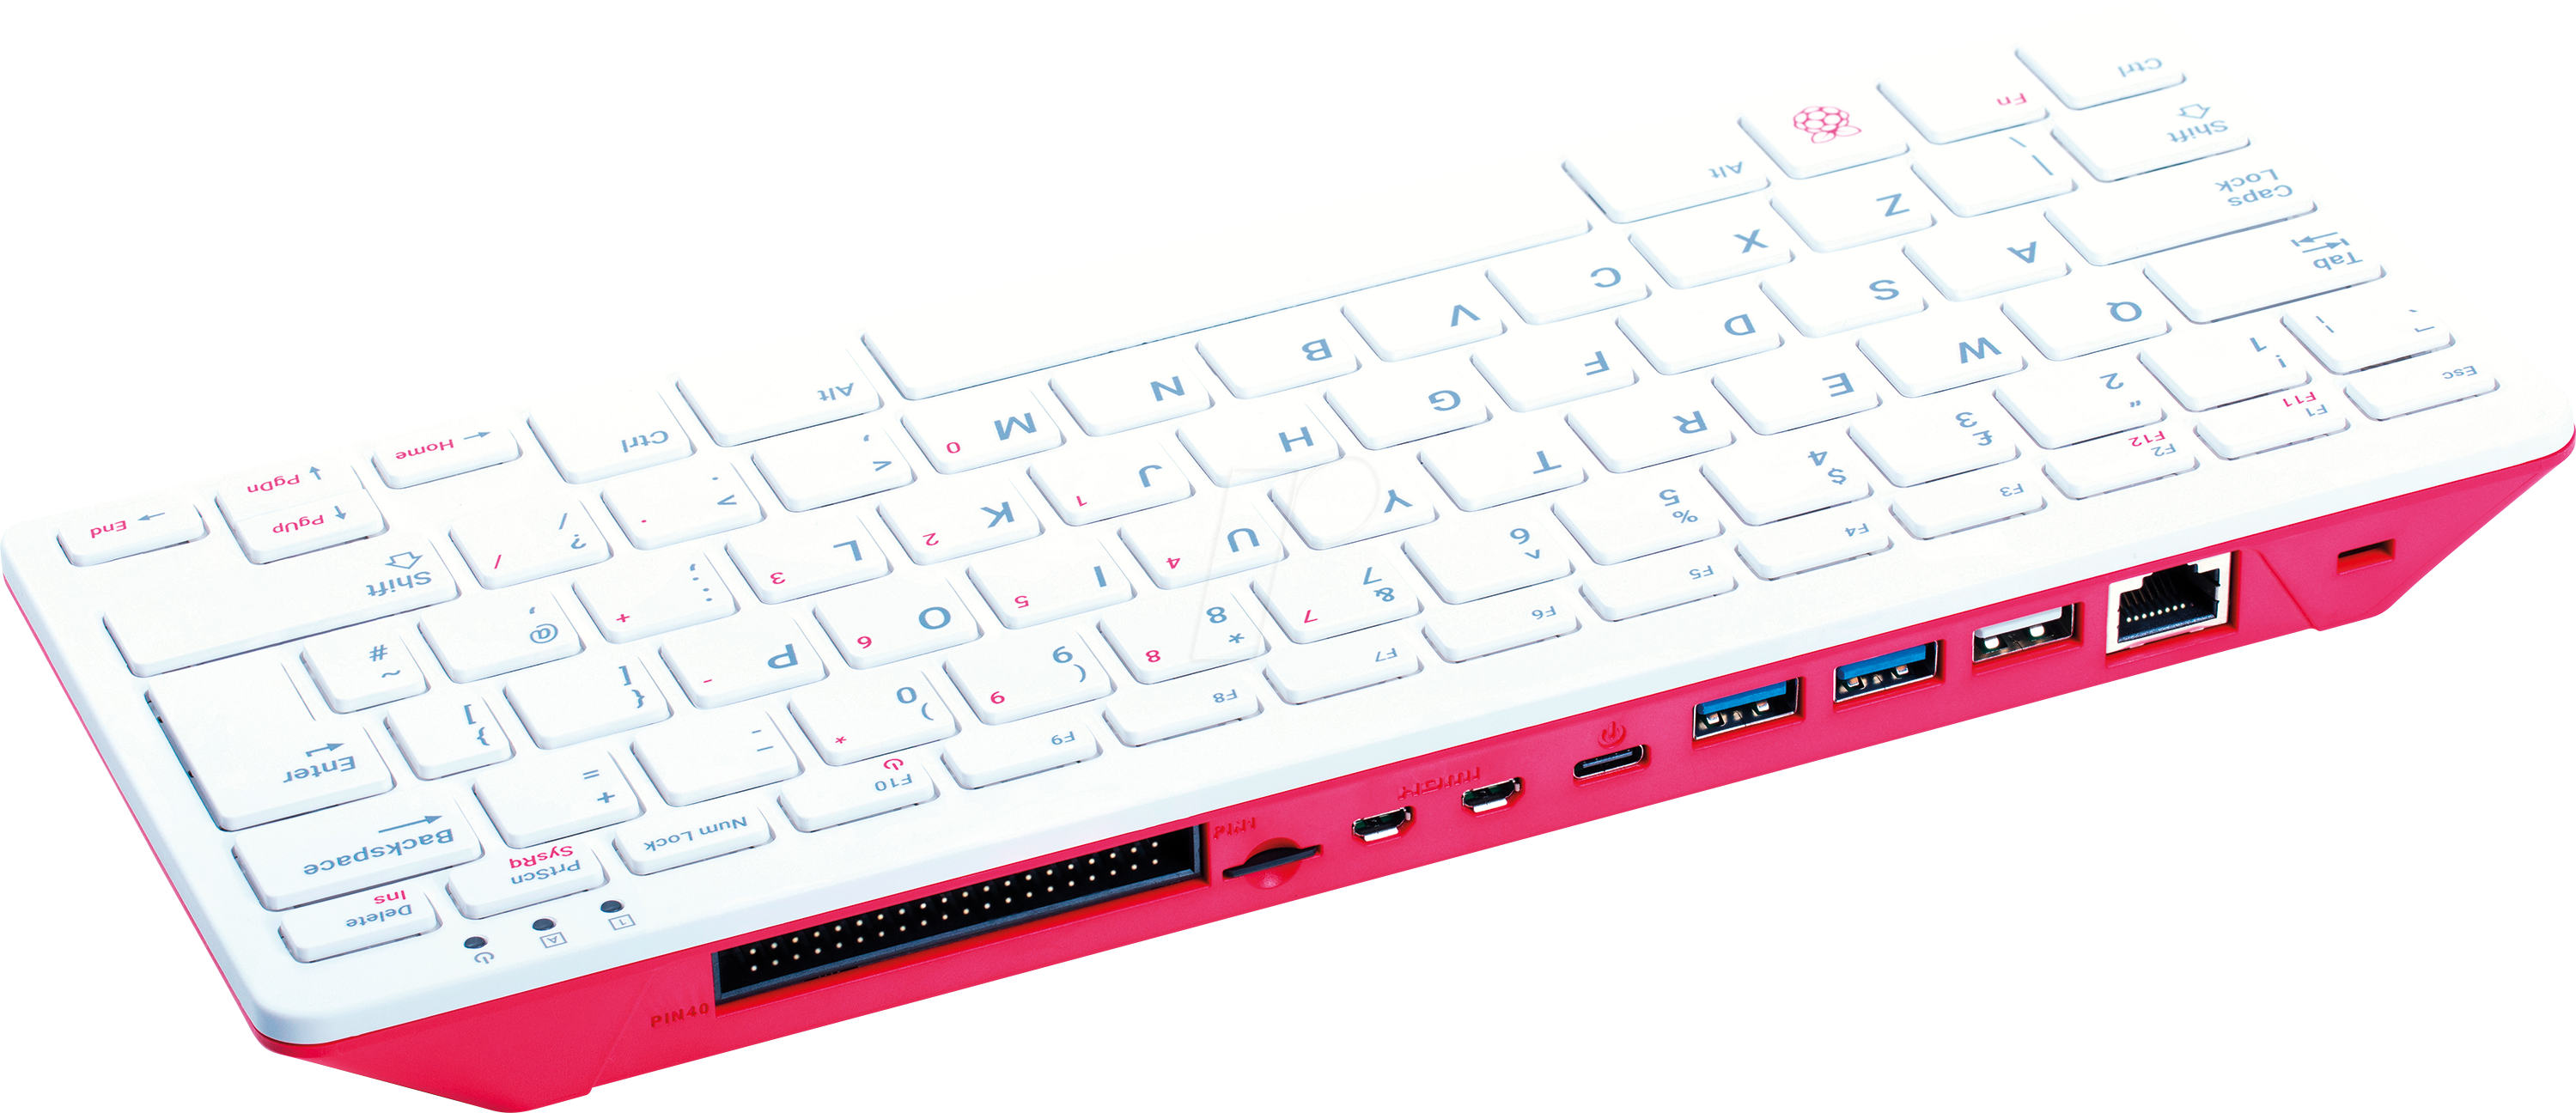 RASP PI400US - Raspberry Pi 400 (US), 4x 1,8GHz, 4GB RAM